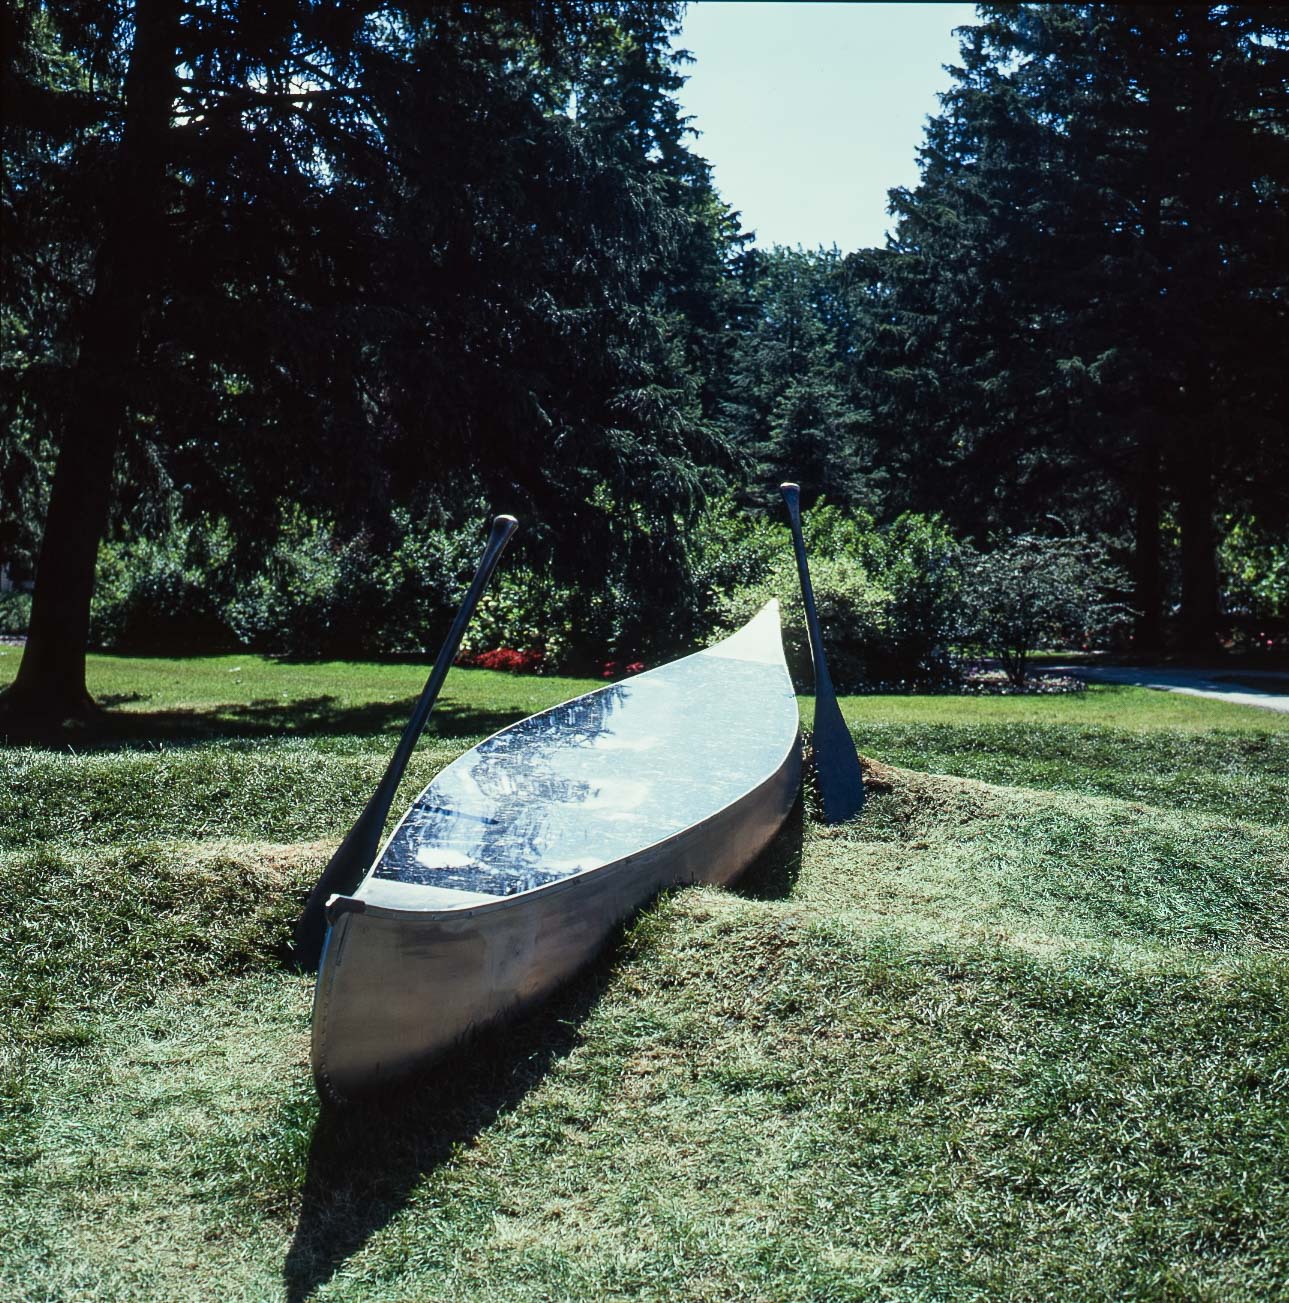 Stray Away  (the Canoe)